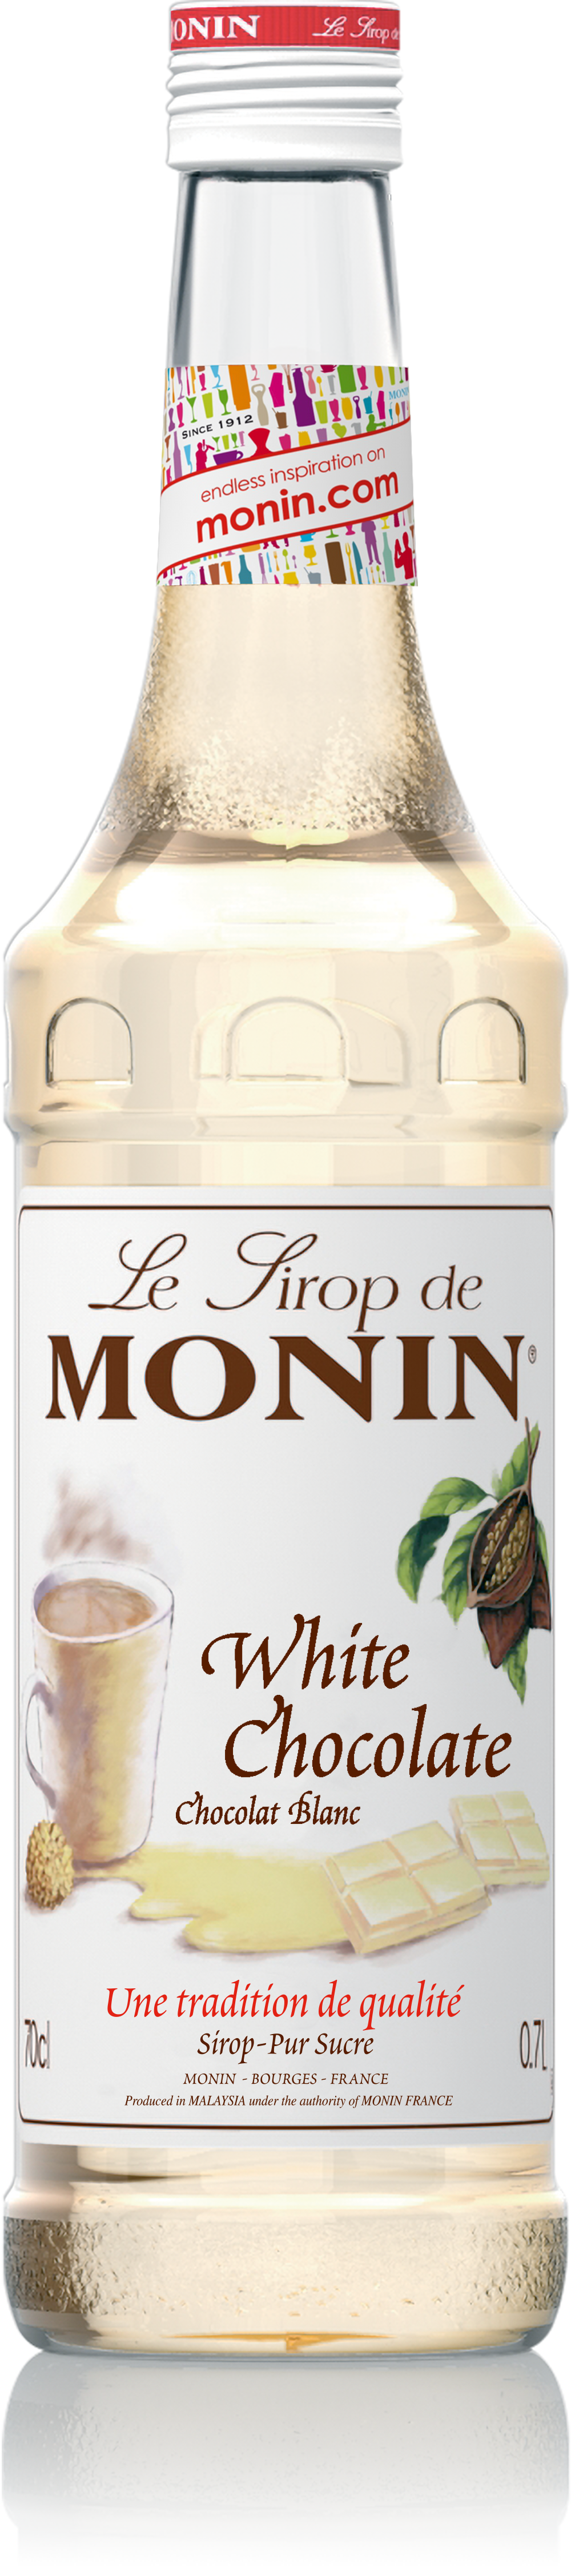 Le Sirop de MONIN White Chocolate